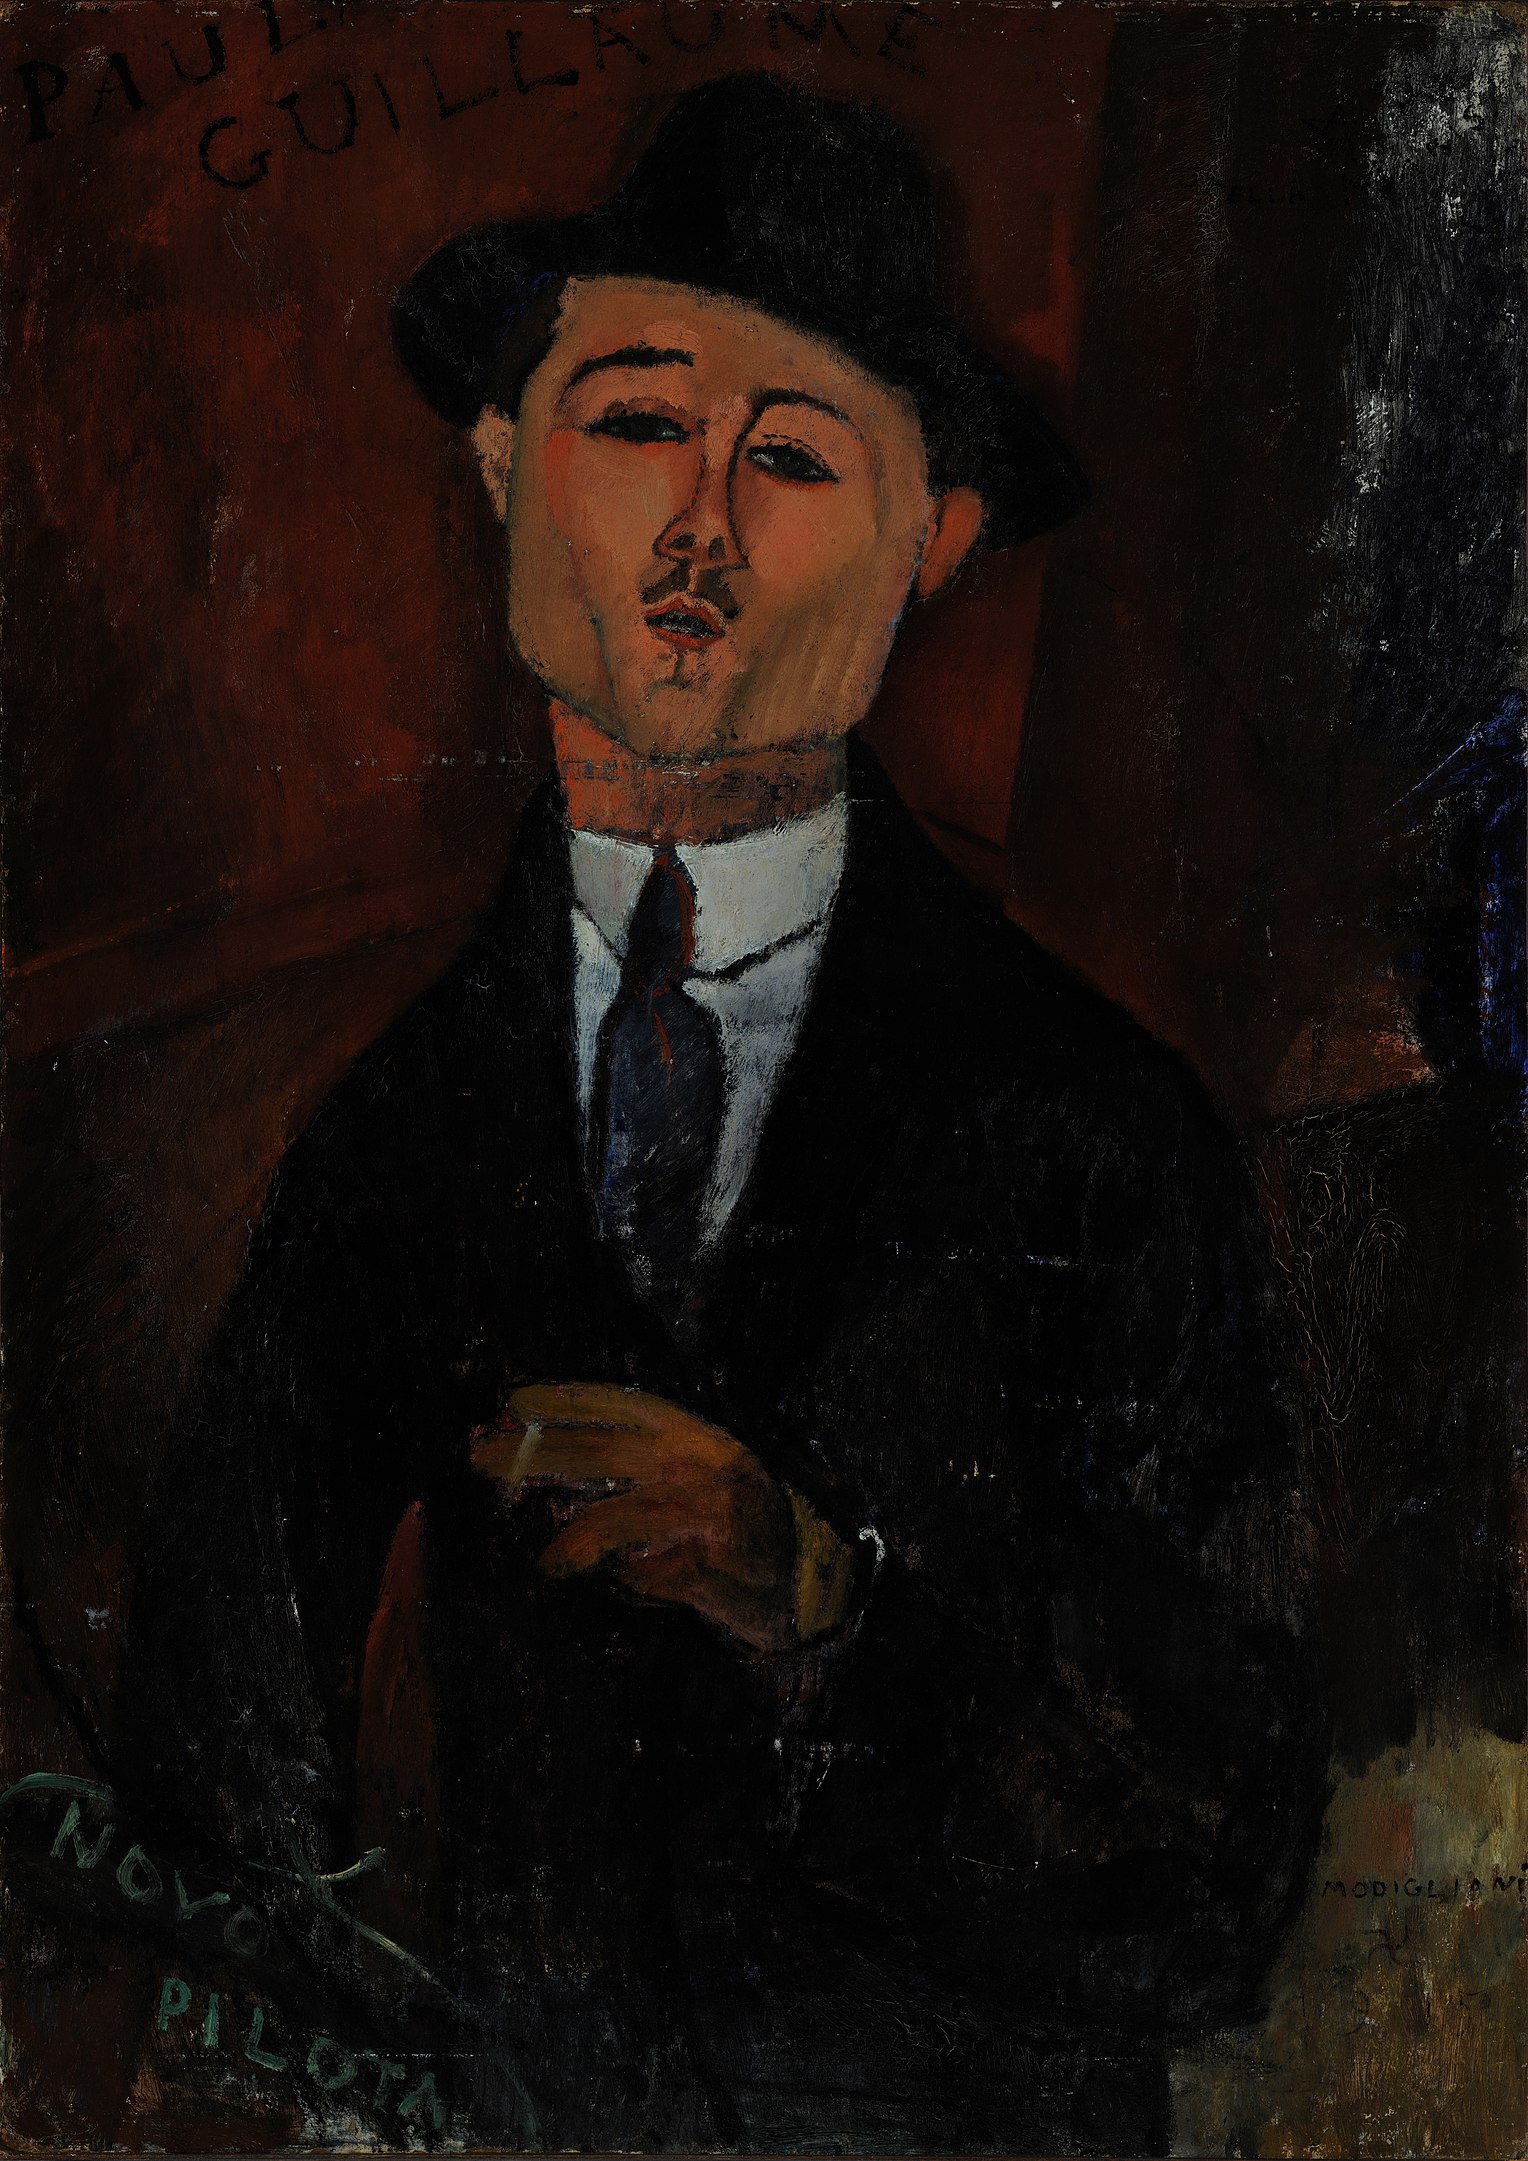 폴 기욤의 초상 by Amedeo Modigliani - 1915년 - 105 x 75 cm 